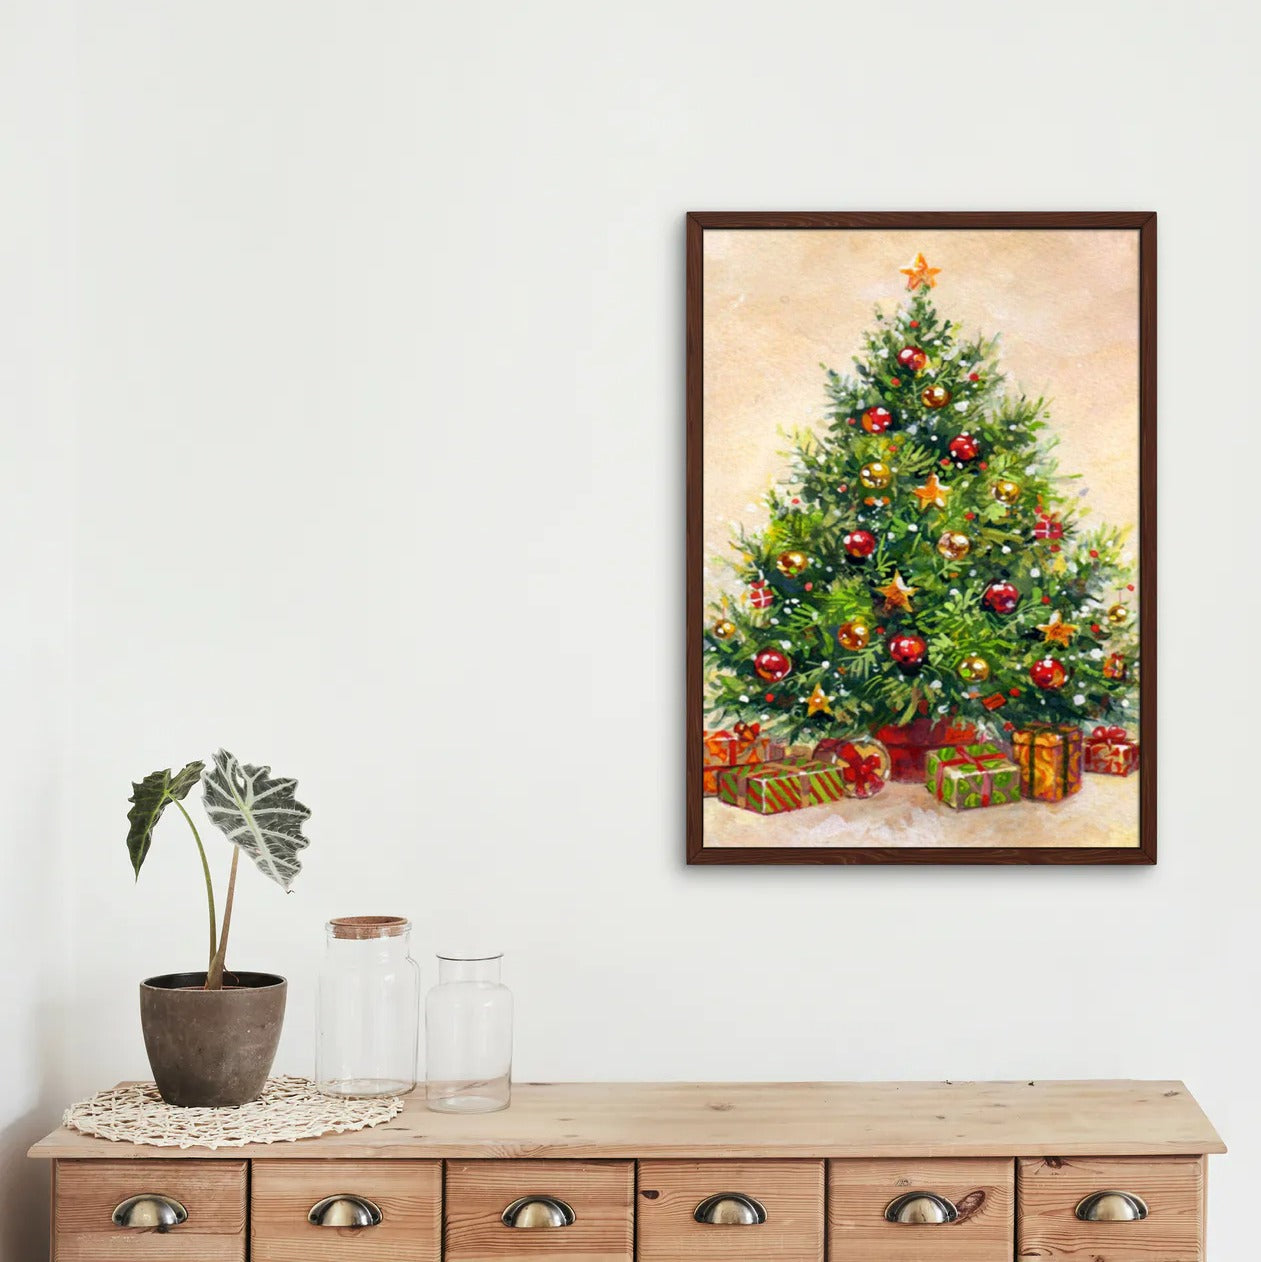 Christmas Tree - Diamond Painting Kit